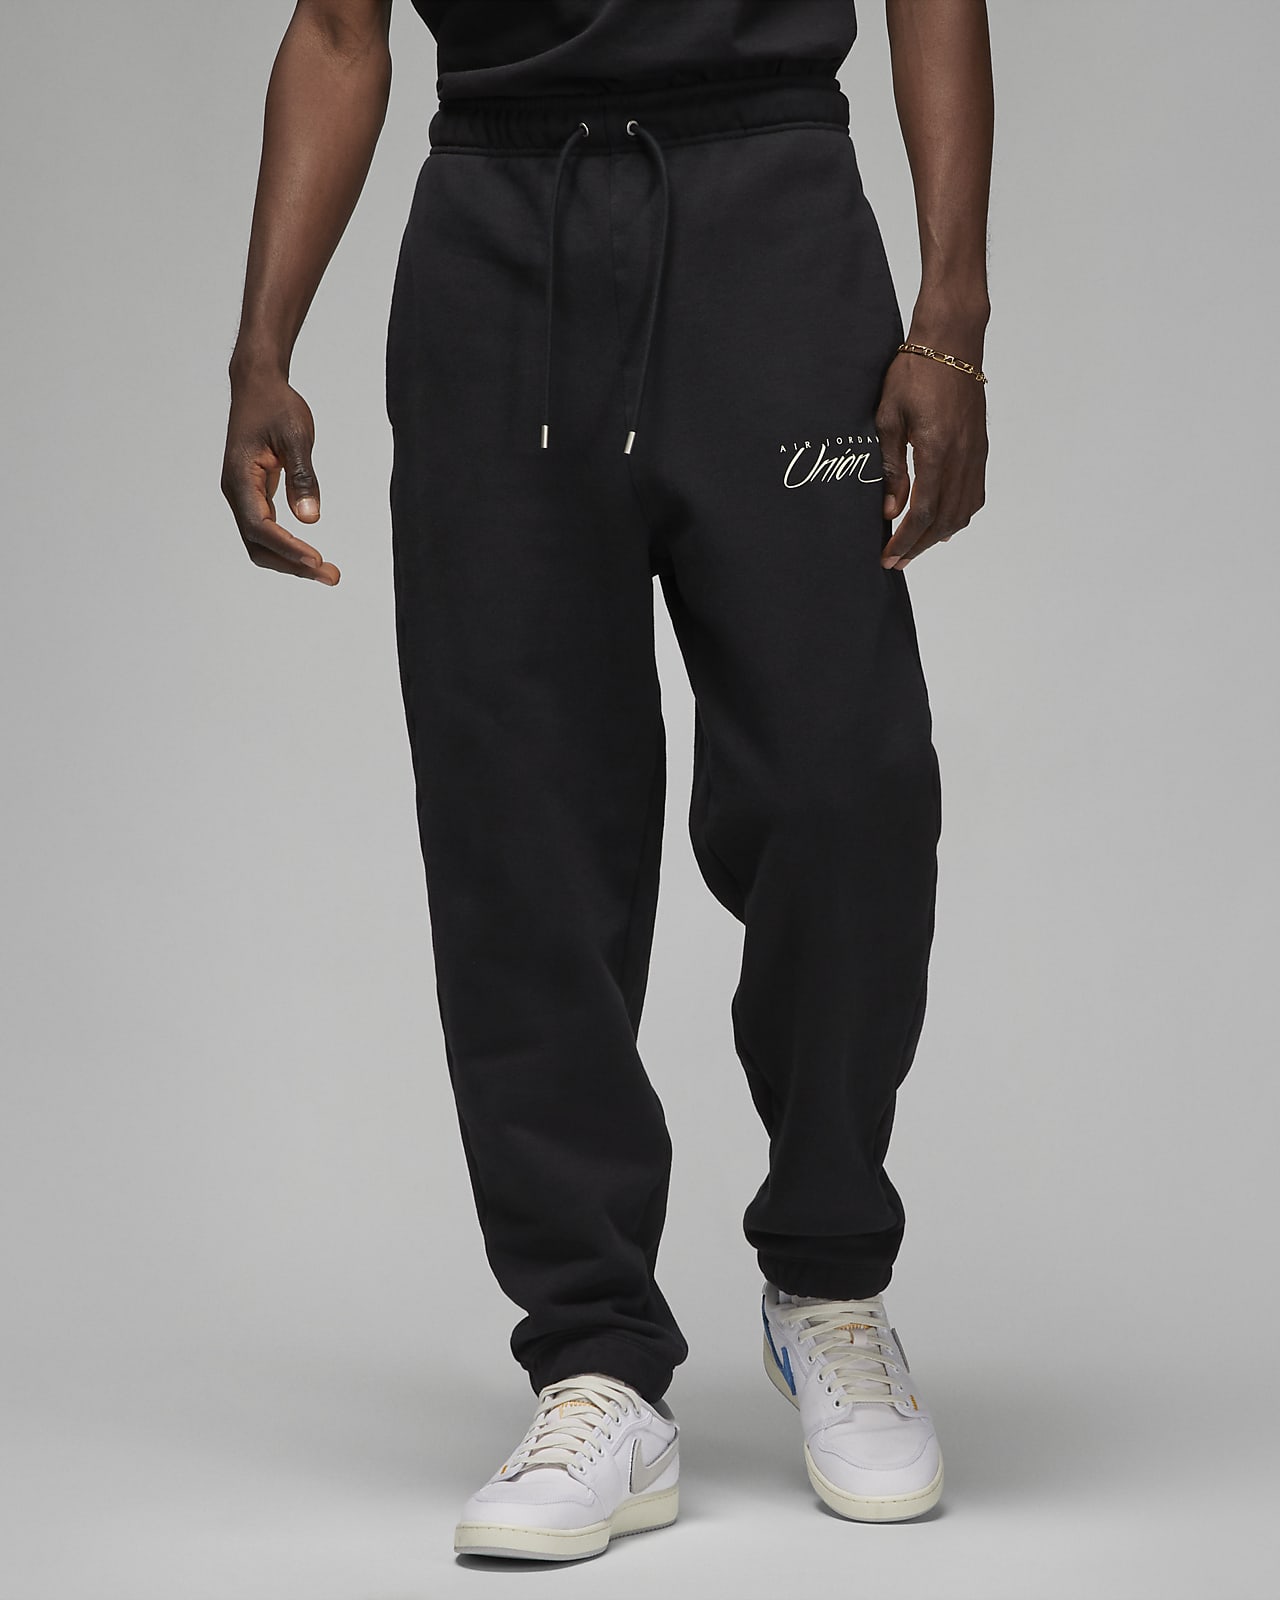 カラーブラックJordan UNION Fleece Pants メンズ パンツ Lサイズ